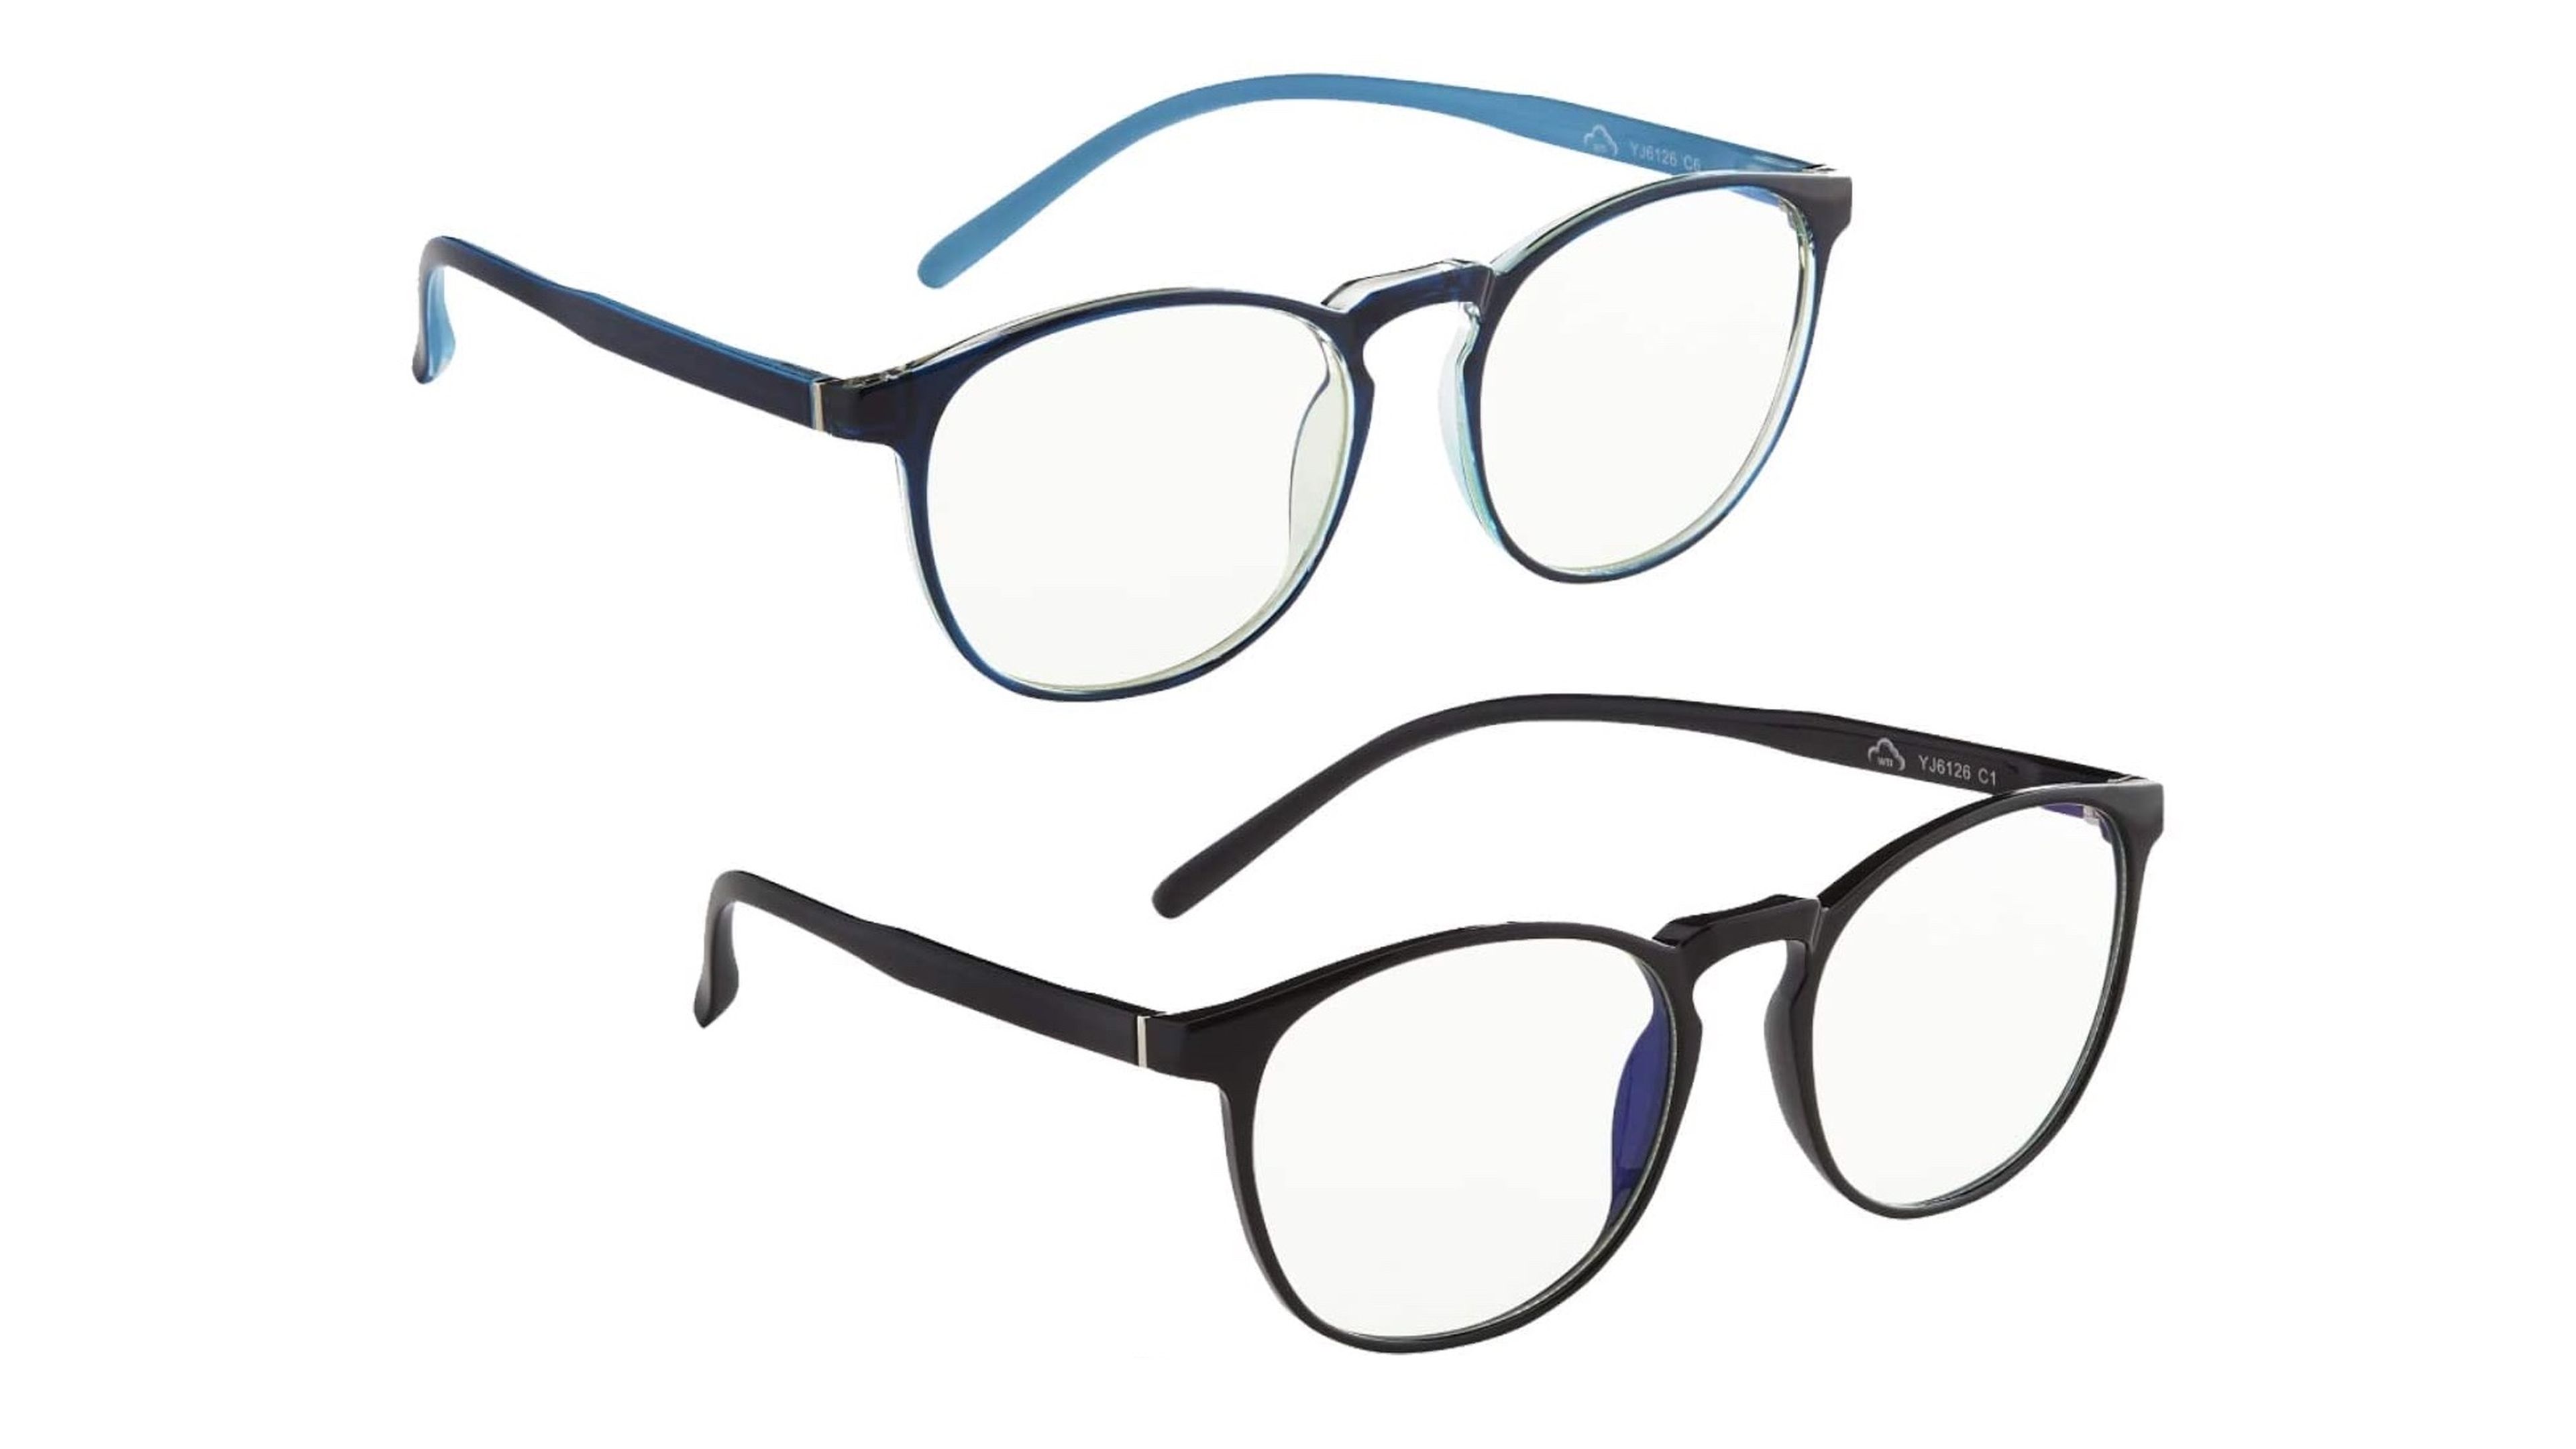 Gafas para ordenador con filtro azul - Encuentra tu estilo y protégete